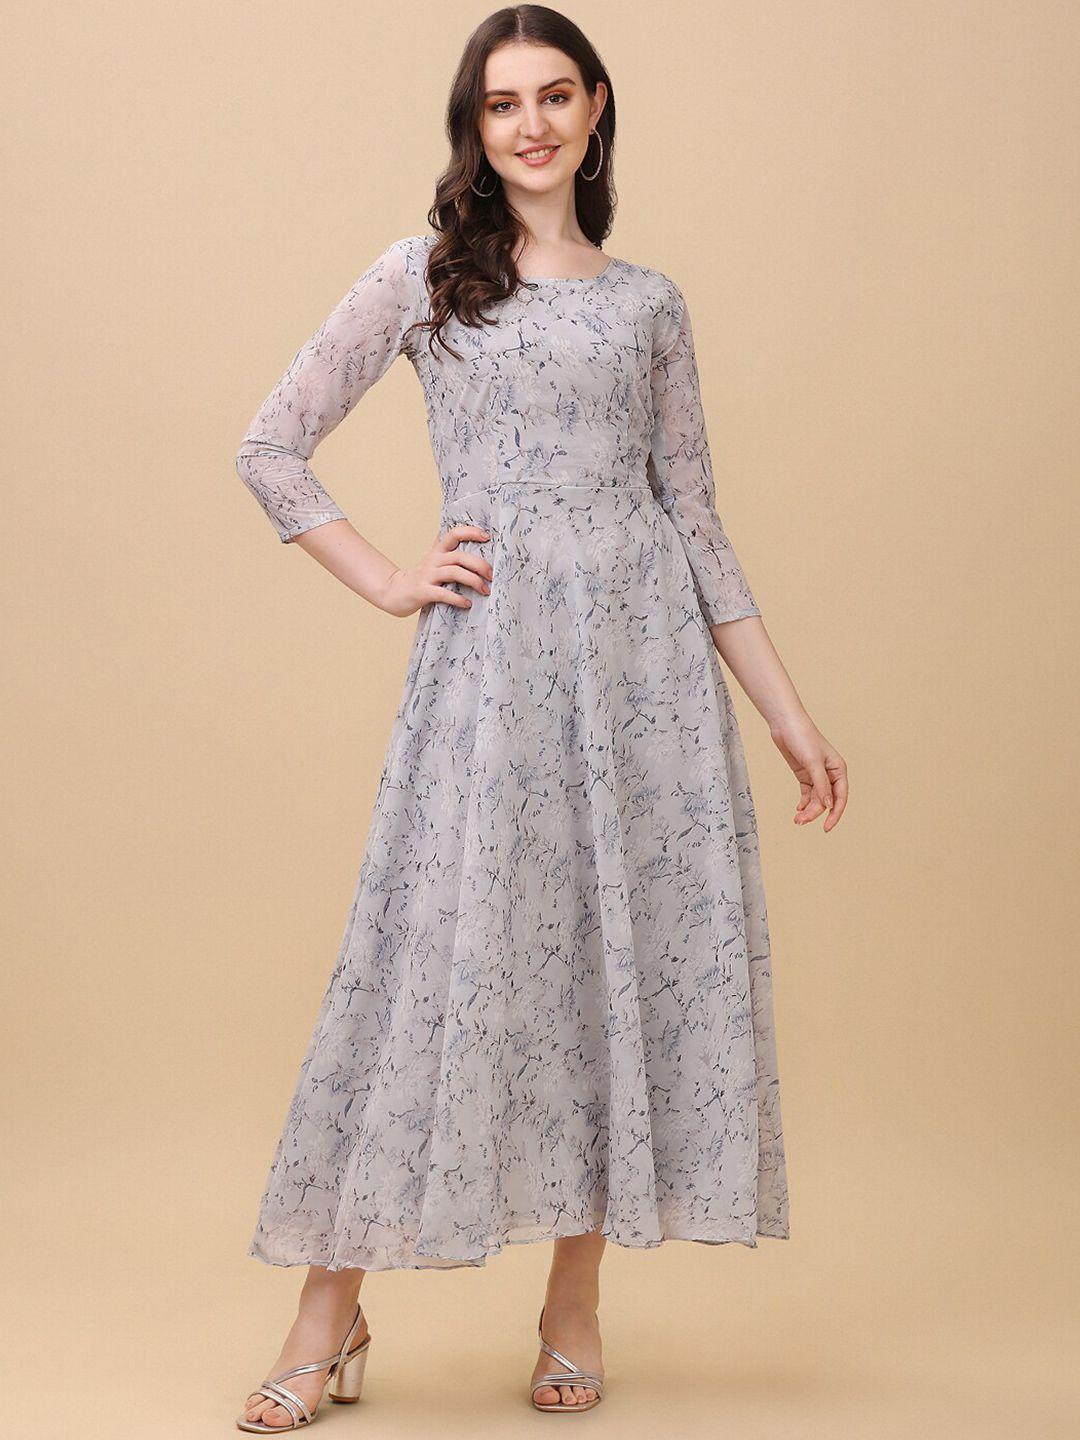 vidraa western store floral print georgette maxi dress